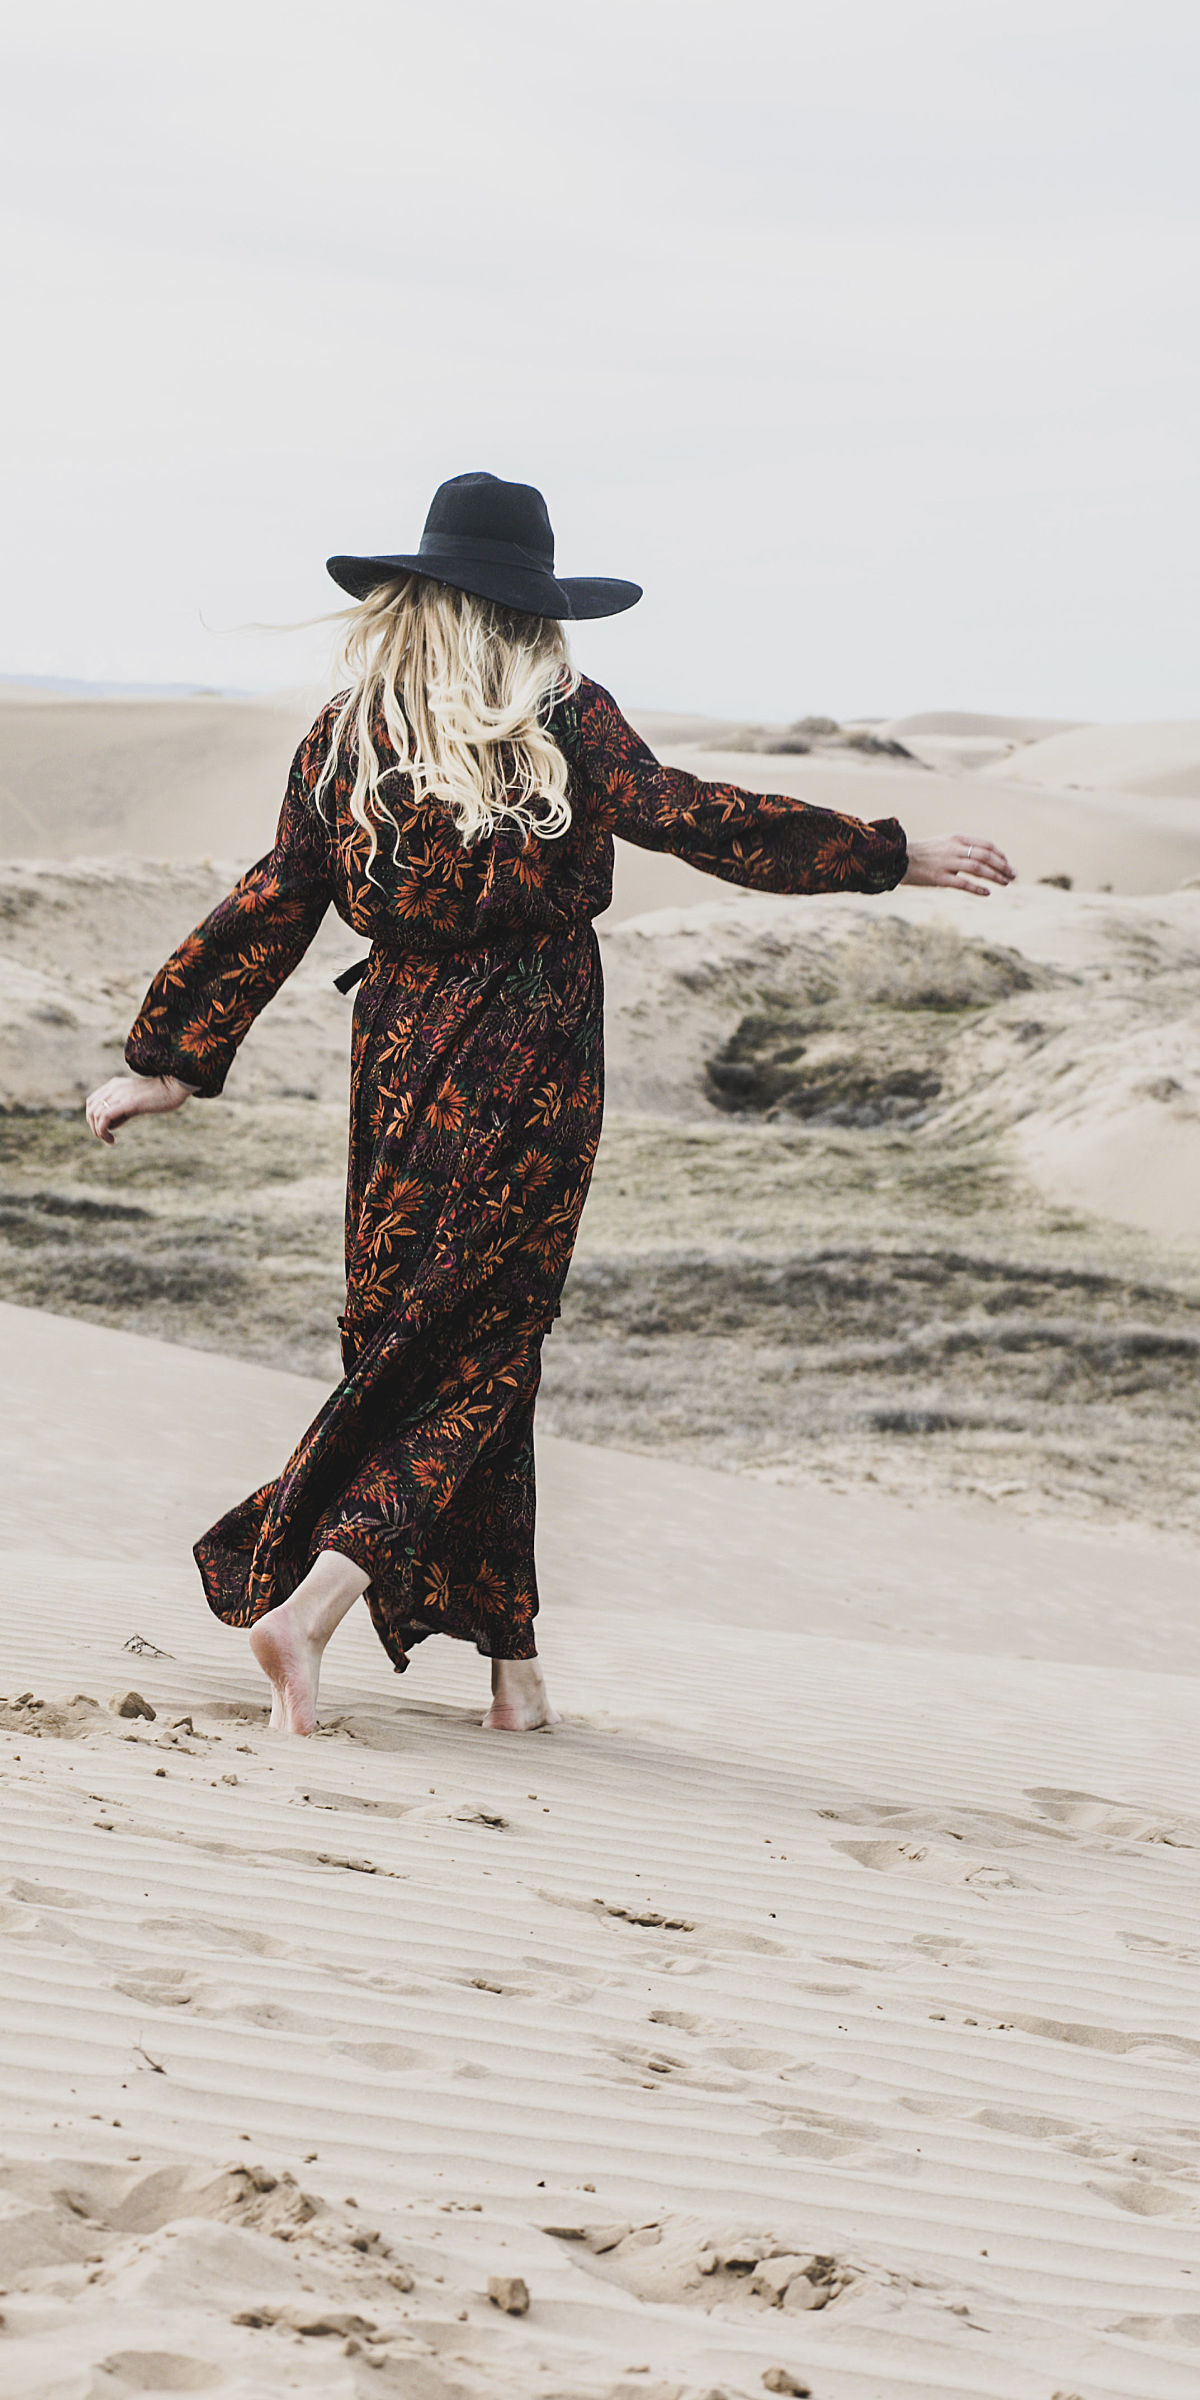 Femme marchant dans le sable